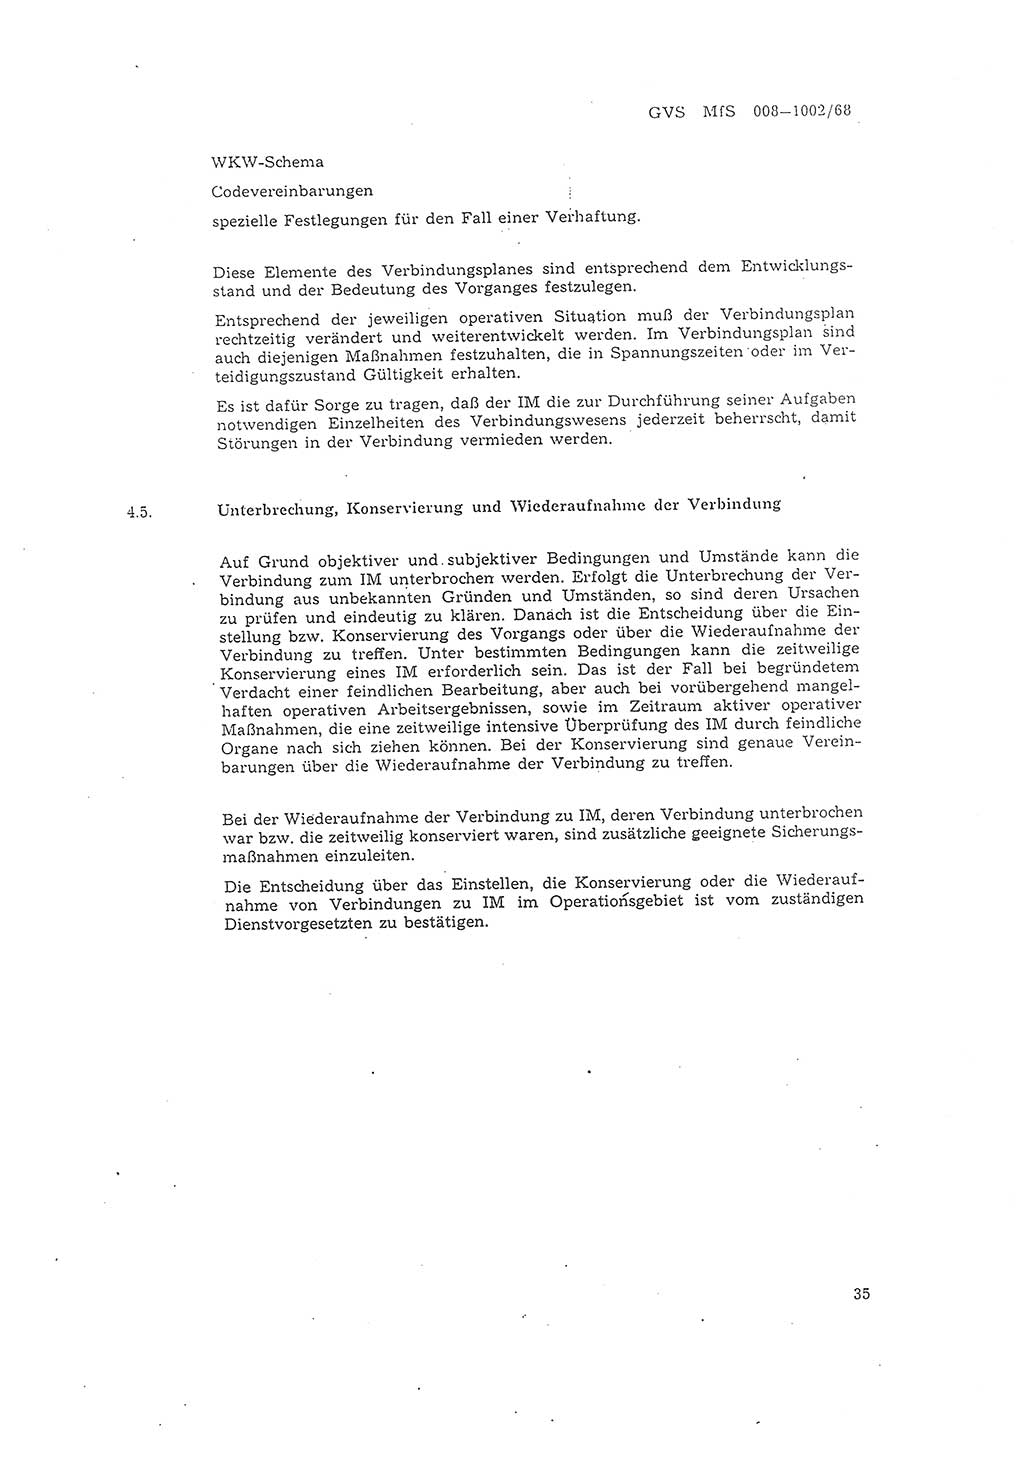 Richtlinie 2/68 für die Arbeit mit Inoffiziellen Mitarbeitern (IM) im Operationsgebiet, Deutsche Demokratische Republik (DDR), Ministerium für Staatssicherheit (MfS), Der Minister (Mielke), Geheime Verschlußsache (GVS) 008-1002/68, Berlin 1968, Seite 35 (RL 2/68 DDR MfS Min. GVS 008-1002/68 1968, S. 35)